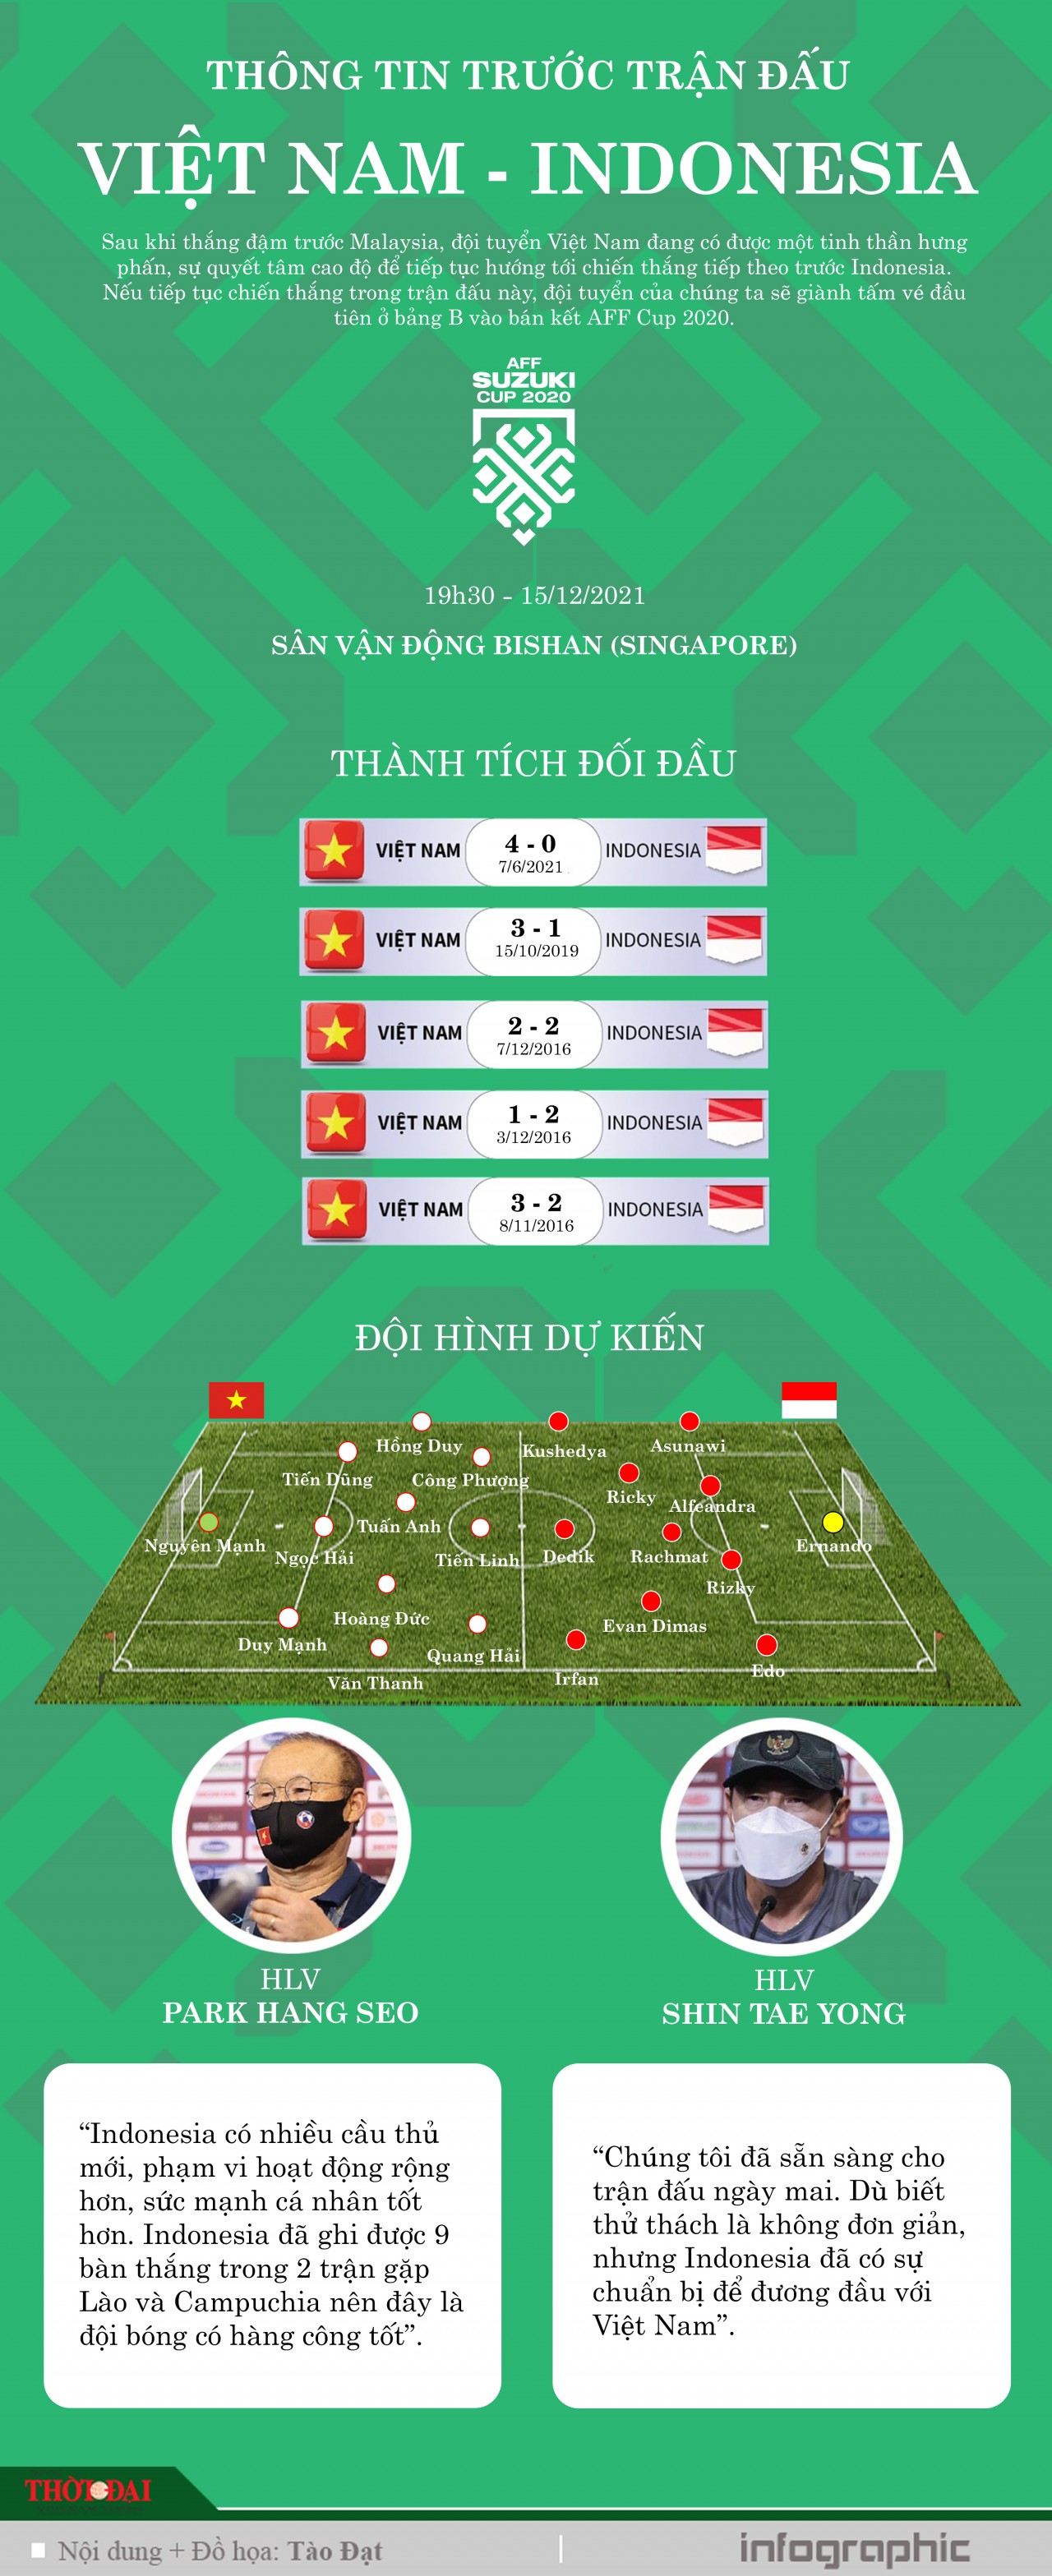 [Infographic] Thông tin trước trận đấu Việt Nam - Indonesia